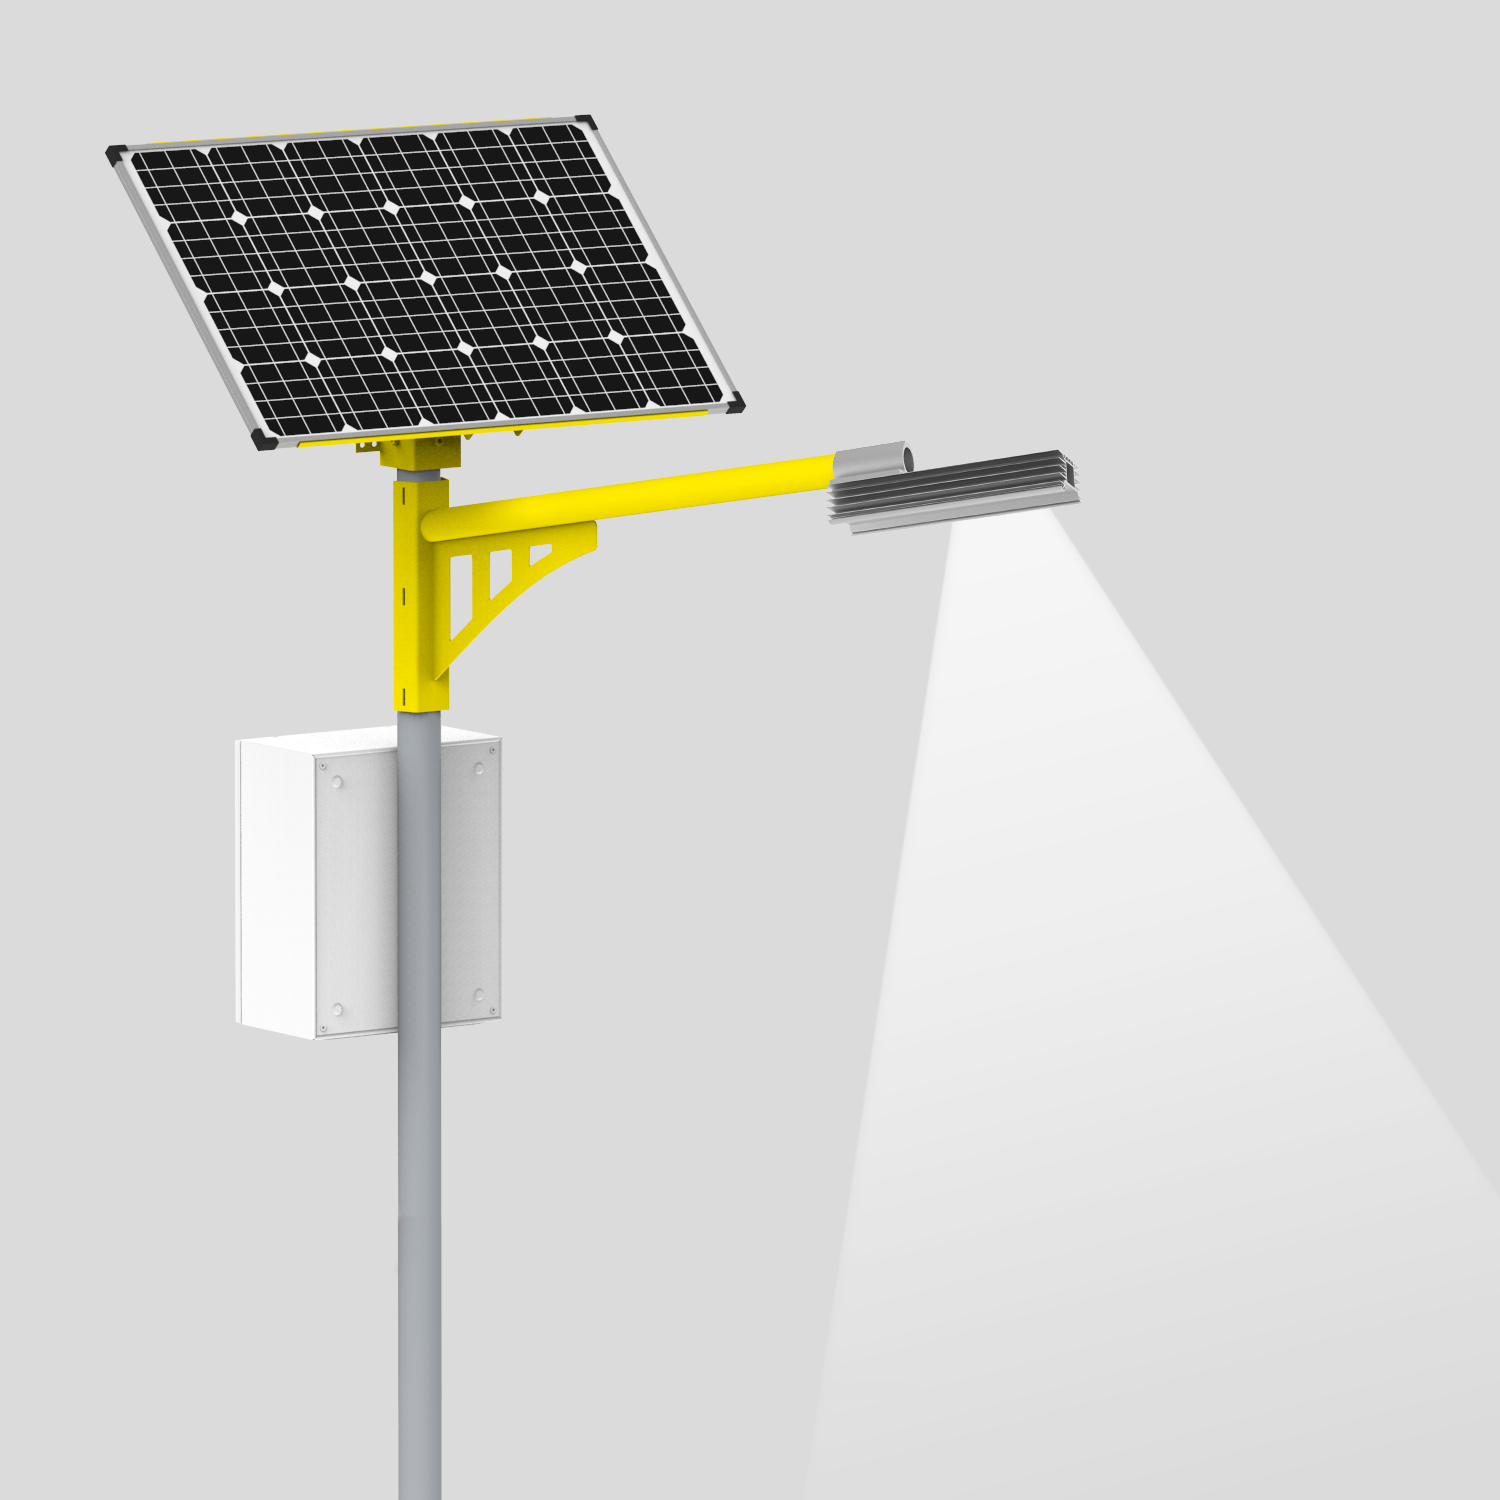 Создание садового светильника на солнечной батарее своими руками, схема устройства